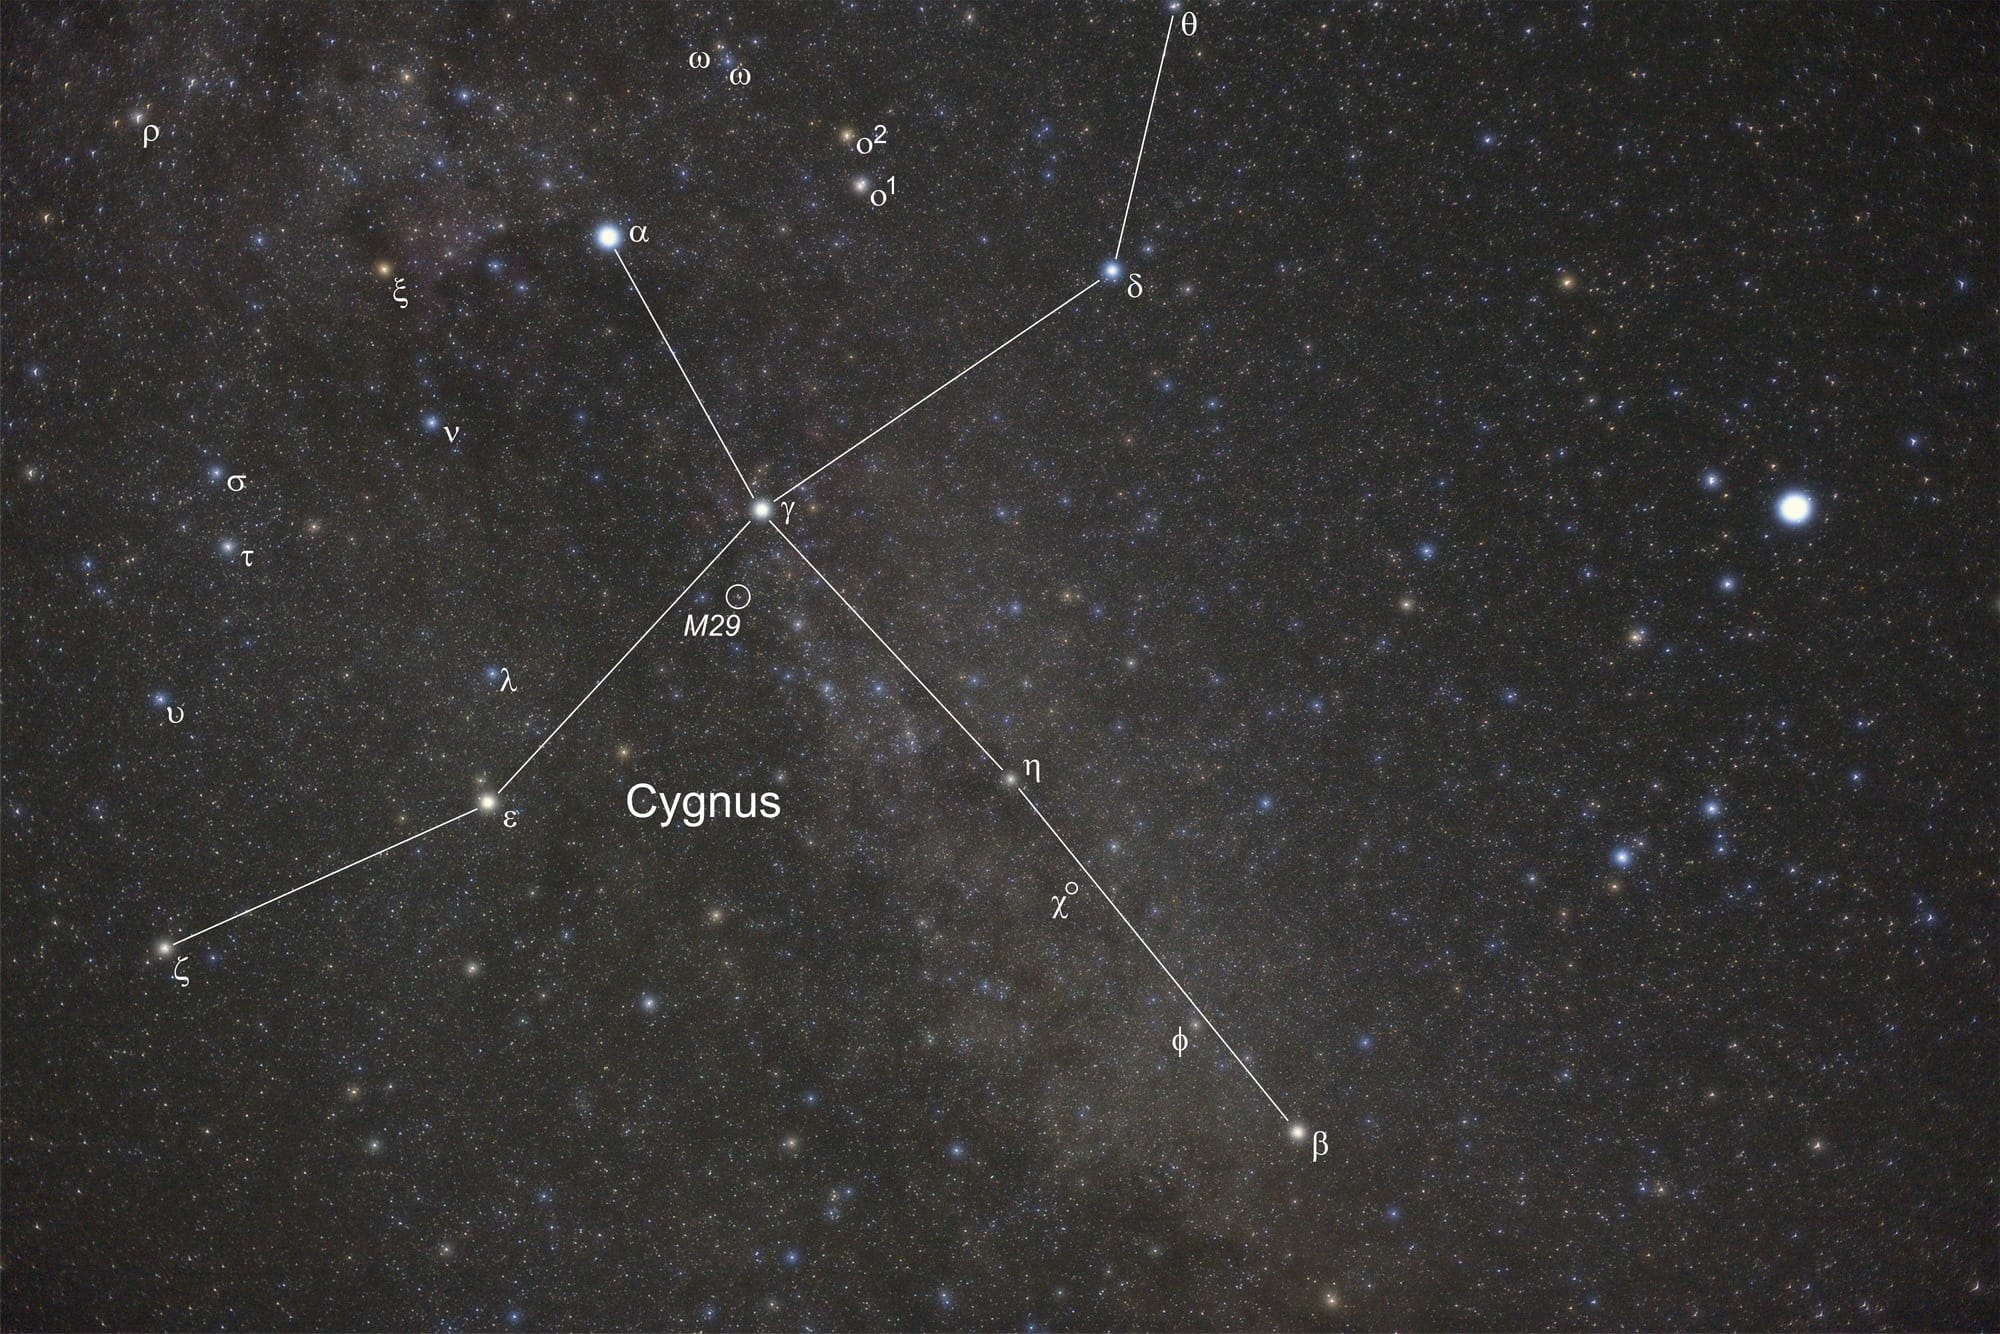 Der offene Sternhaufen M29 liegt knapp 2° südöstlich des Sterns Gamma Cygni